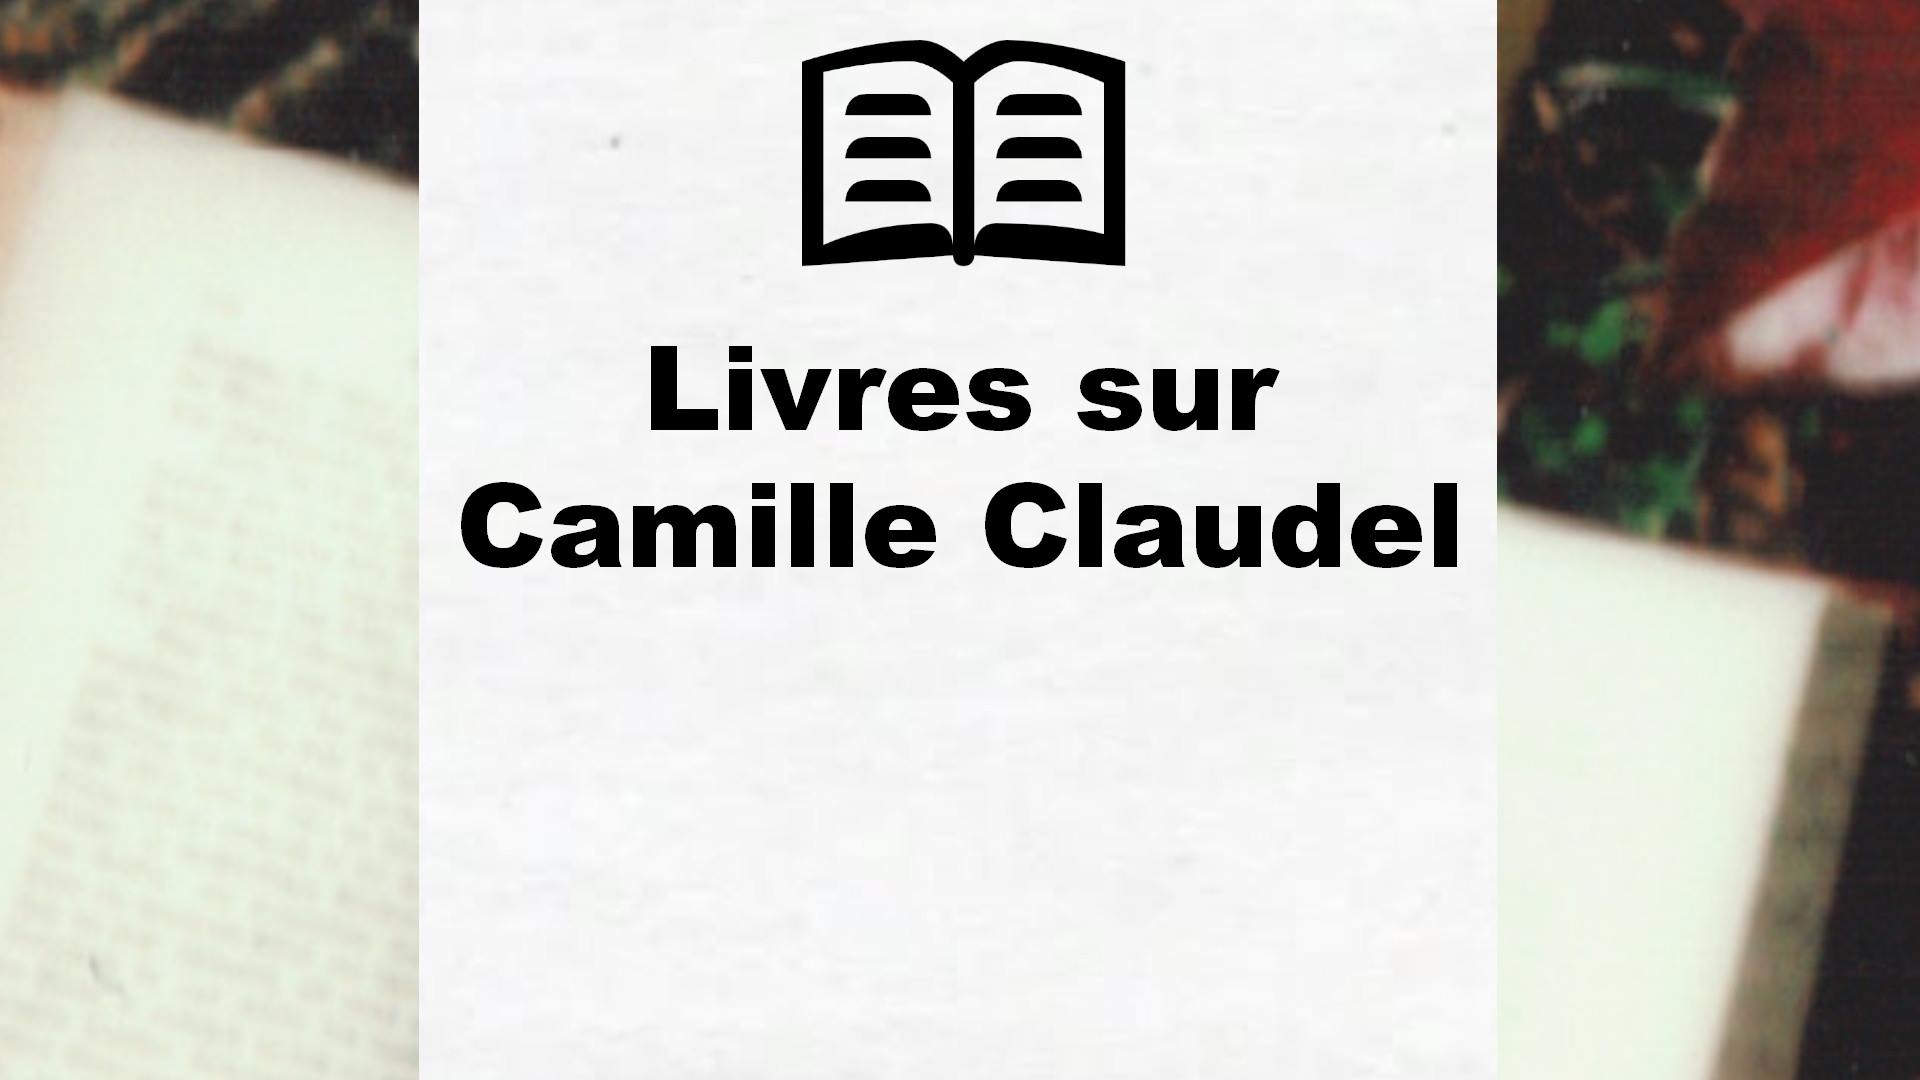 Livres sur Camille Claudel